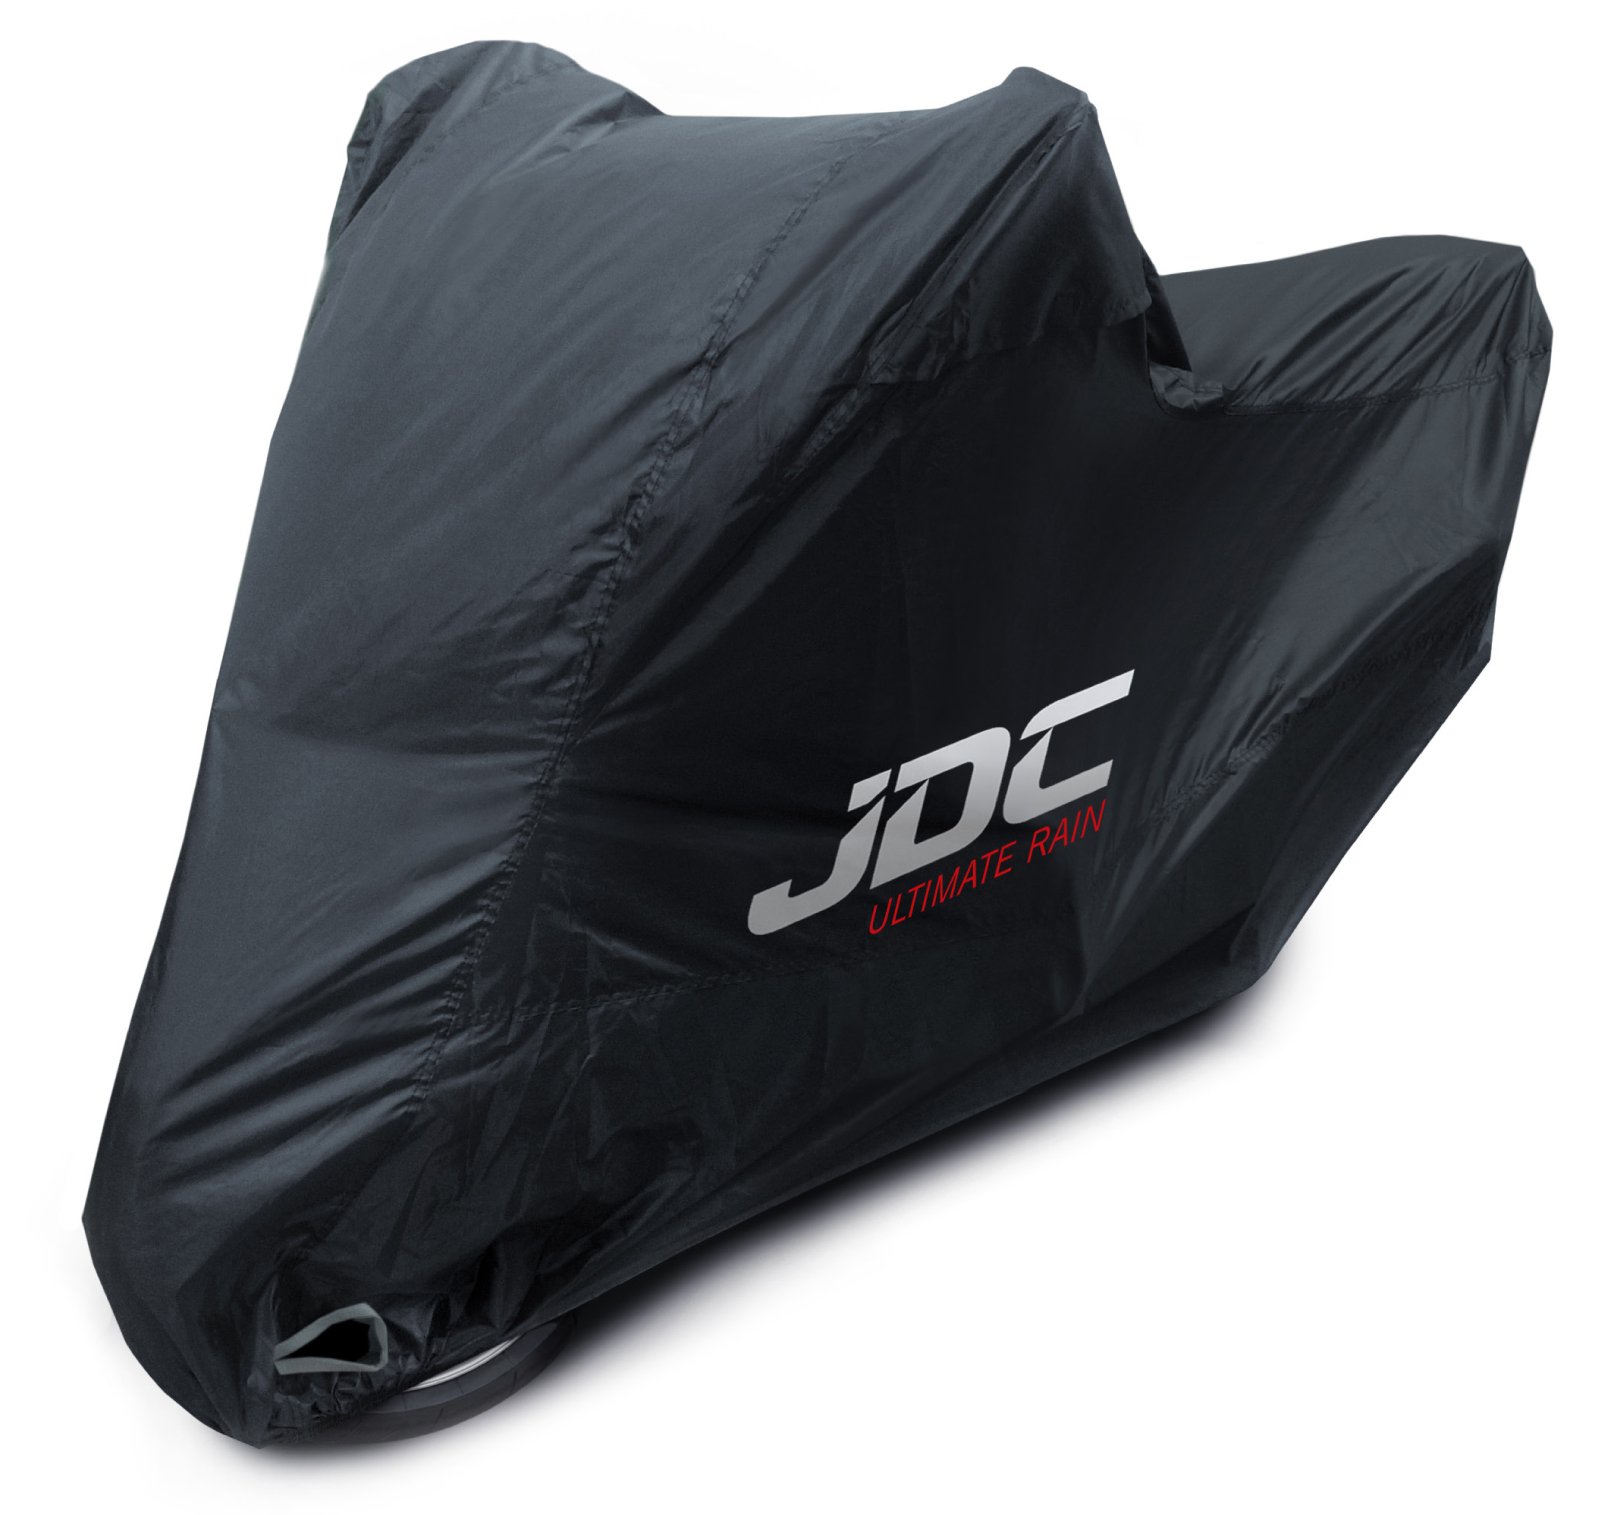 JDC 100% wasserdichte Motorradabdeckung – Ultimate RAIN (Strapazierfähig, weiches Futter, hitzebeständig, verschweißte Nähte) - S von JDC